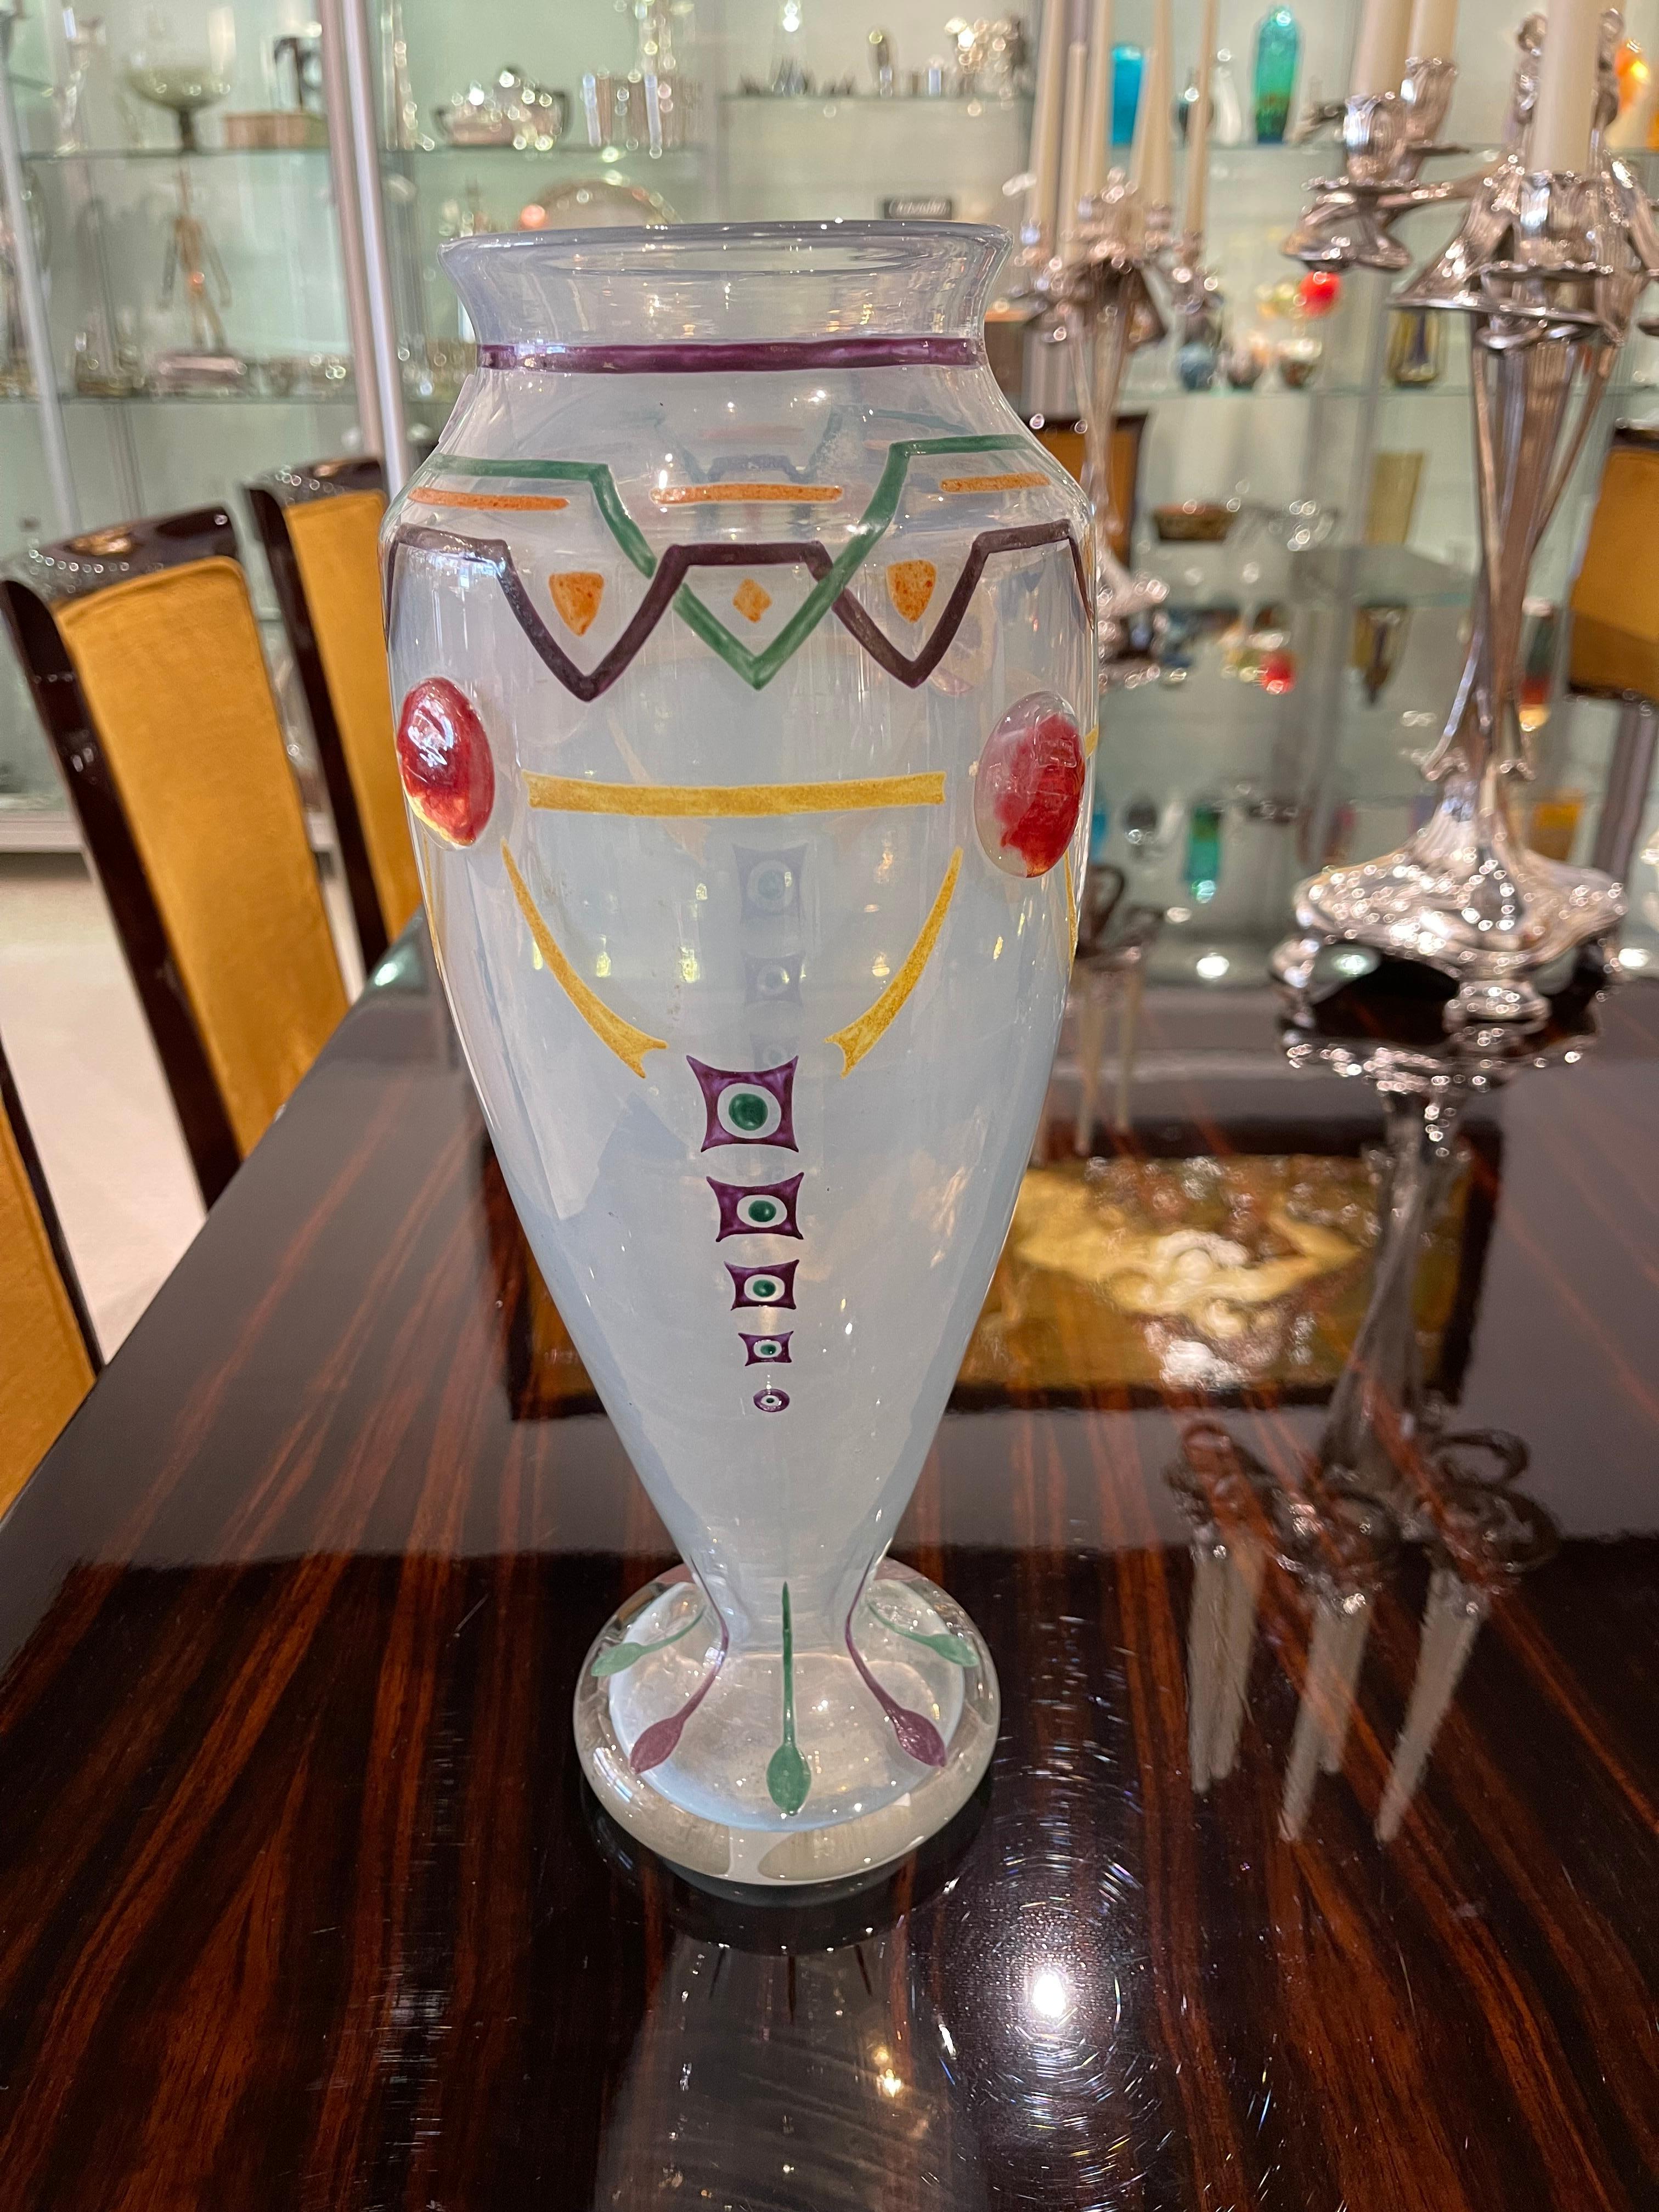 Un rare vase Art Déco en verre opalescent émaillé à la main dans des couleurs orange, vert, violet avec un décor émaillé en or.
Fabriqué en France.
Circa : 1920
Signature : Schneider.